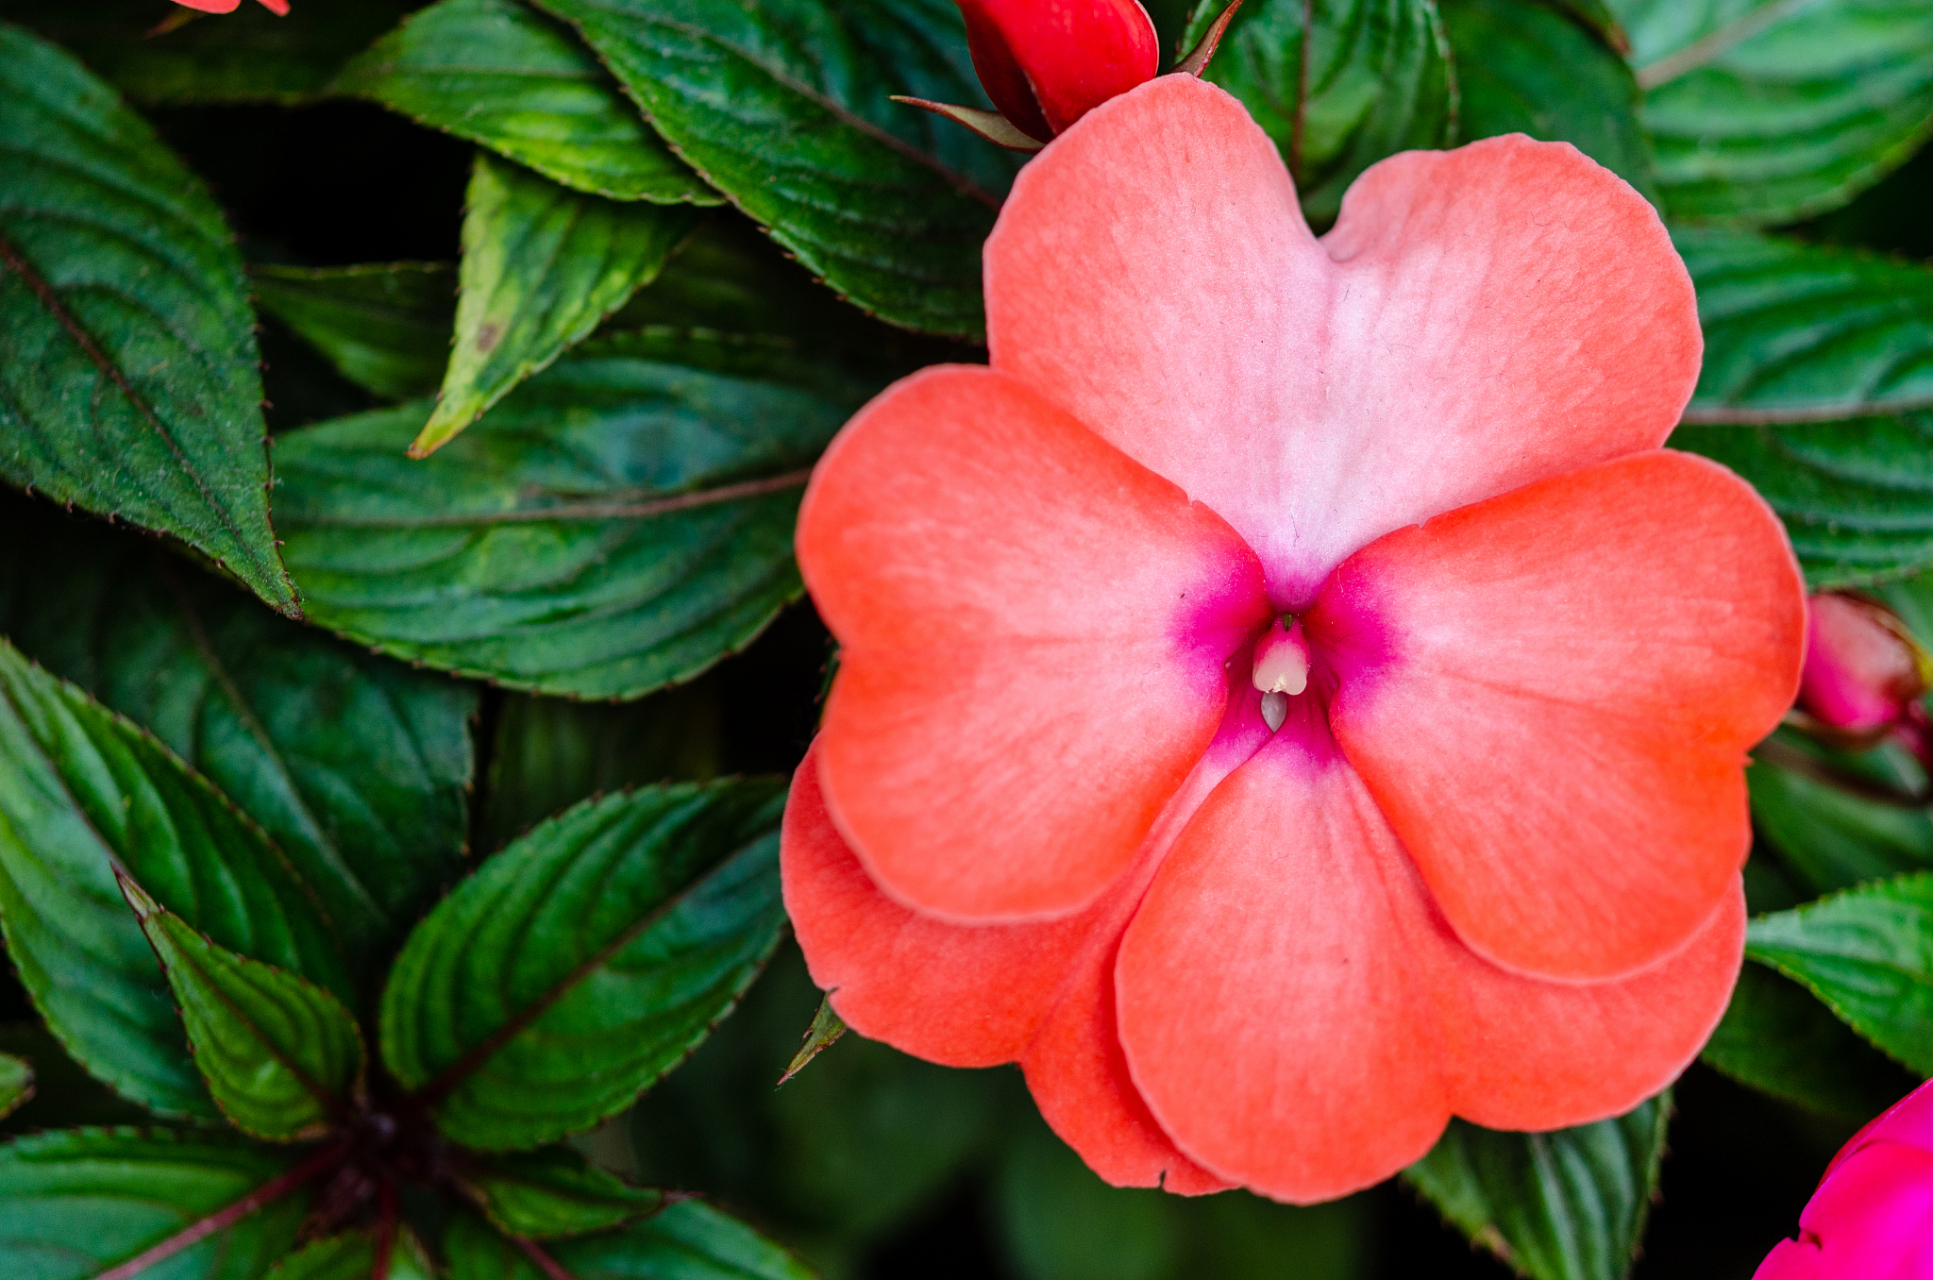 凤仙花的颜色十分丰富,包括红,粉,黄,白等多种颜色,极具观赏价值